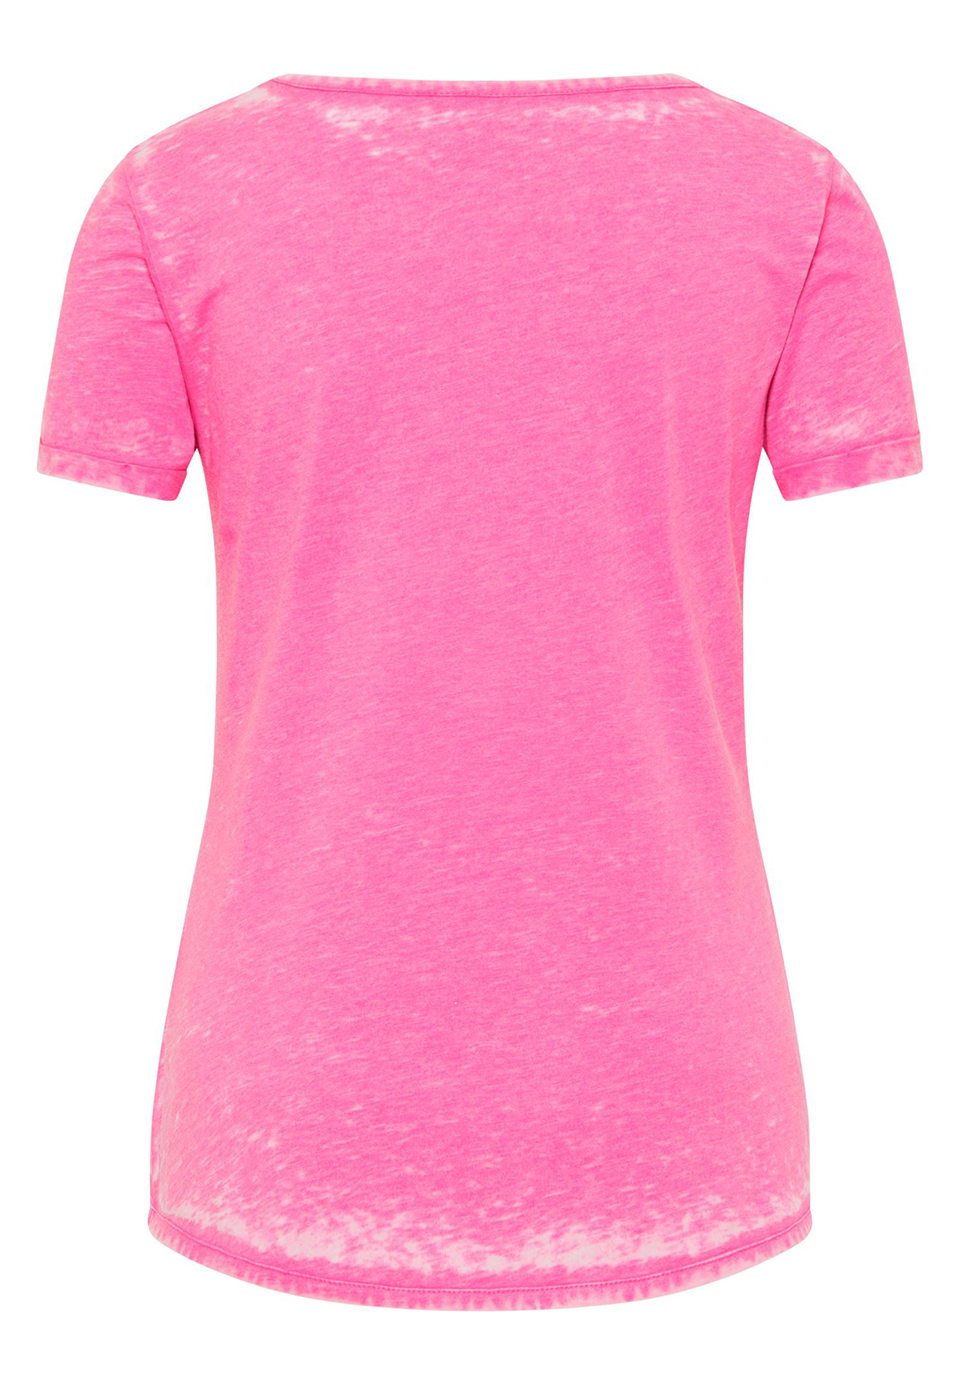 Venice Bach Damen FAYZA T-Shirt Casual Shirt im Ausbrenner-Look 15937 pink